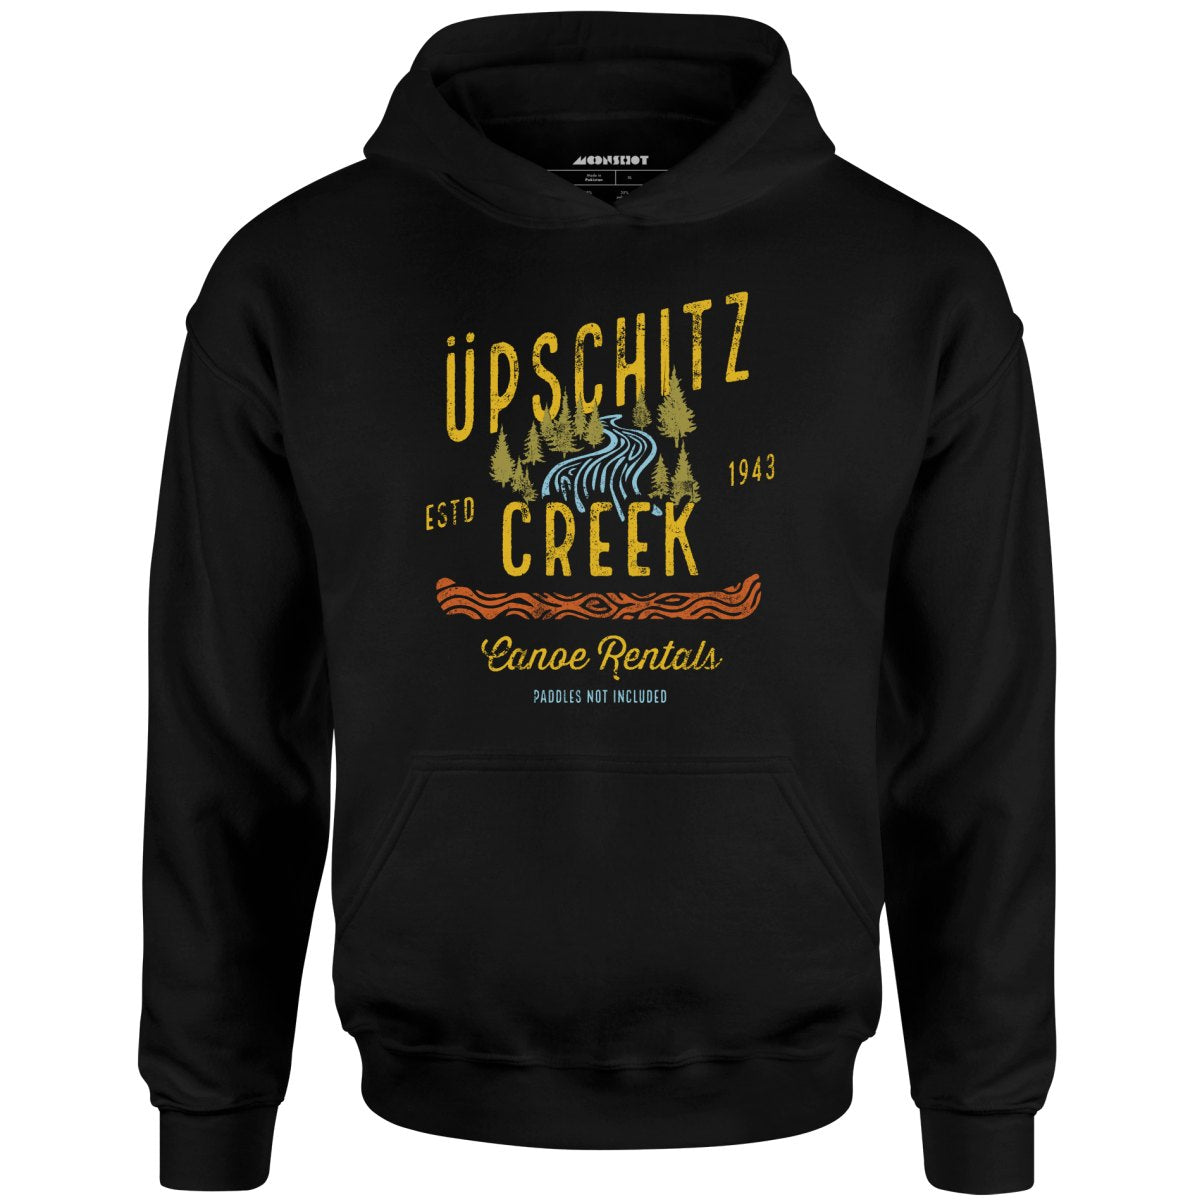 Upschitz Creek - Unisex Hoodie